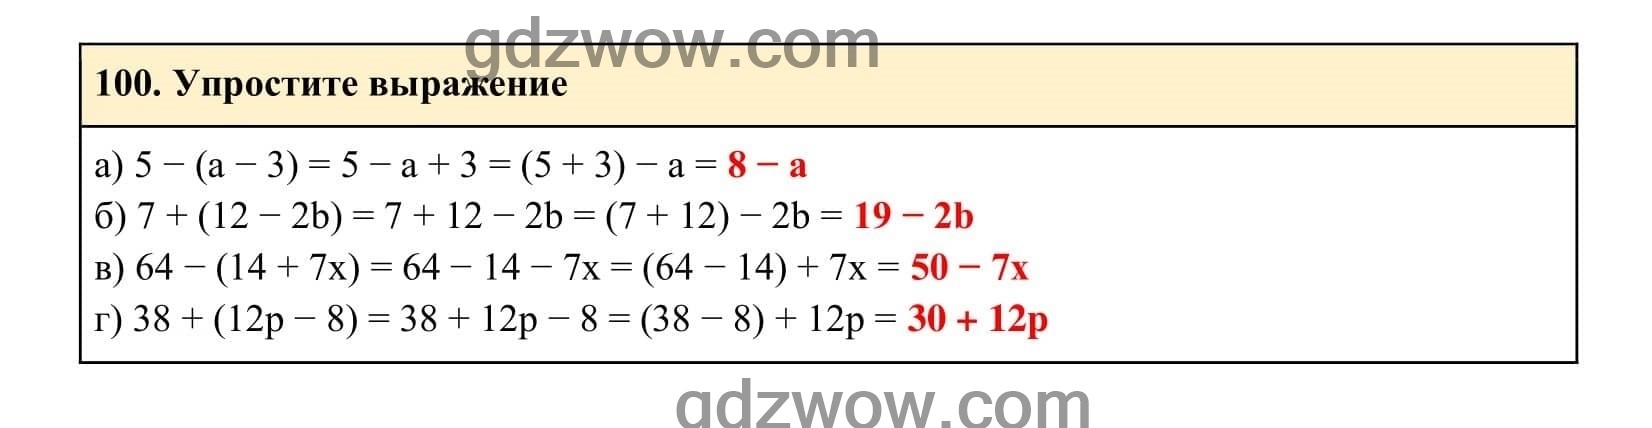 Упражнение 100 - ГДЗ по Алгебре 7 класс Учебник Макарычев (решебник) - GDZwow